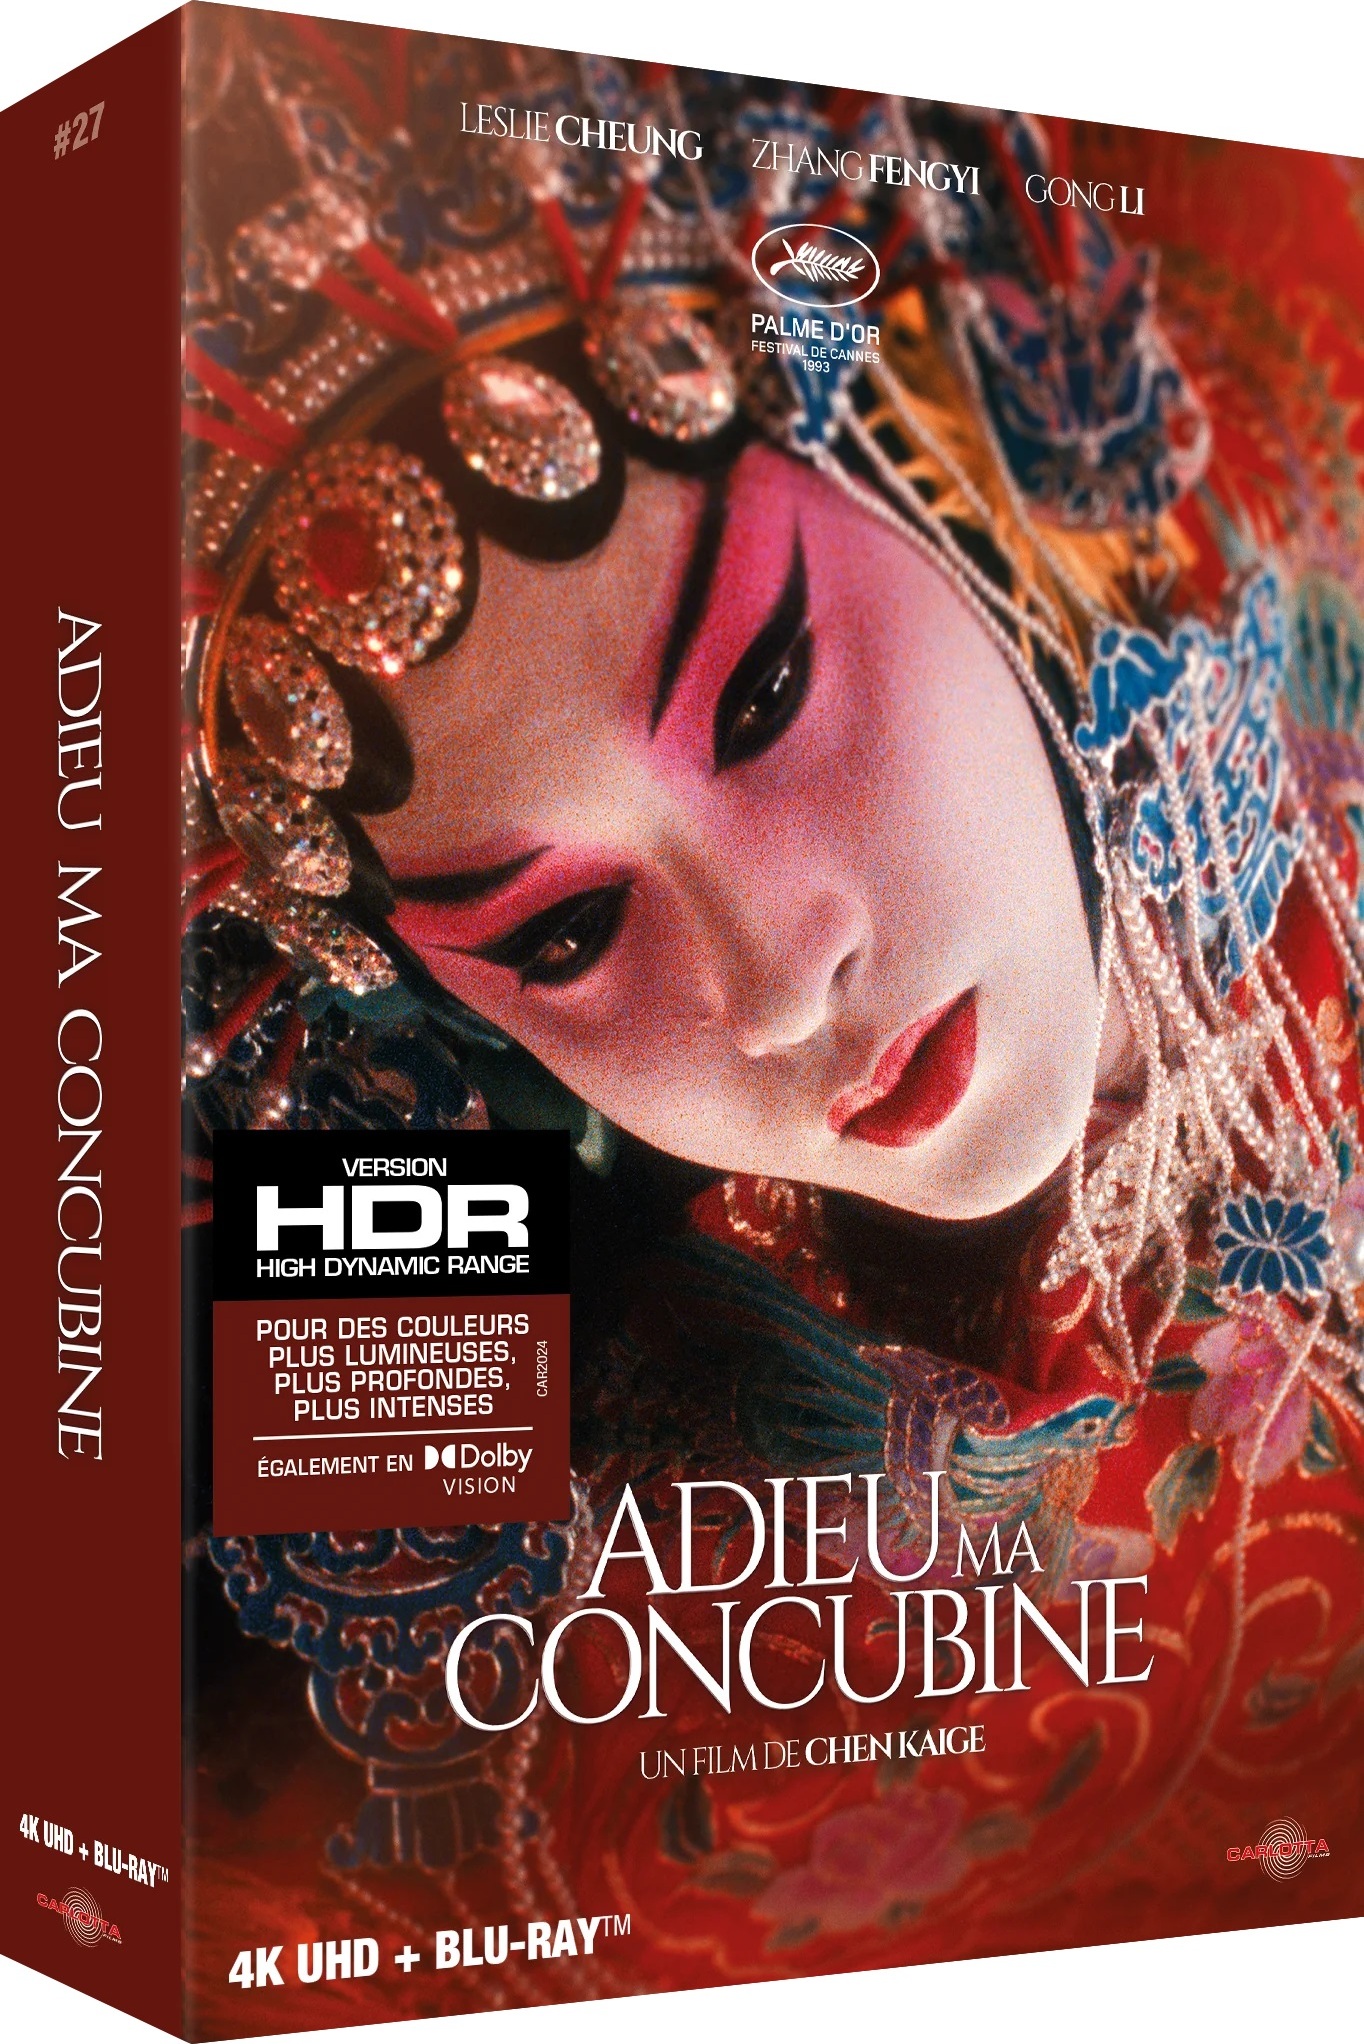 霸王别姬 [UHD原盘DIY简繁字幕评论音轨对应字幕] Farewell My Concubine 1993 2160p FRA UHD Blu-ray DV HDR HEVC DTS-HD MA 5 1-BHYS@OurBits[91.78GB]